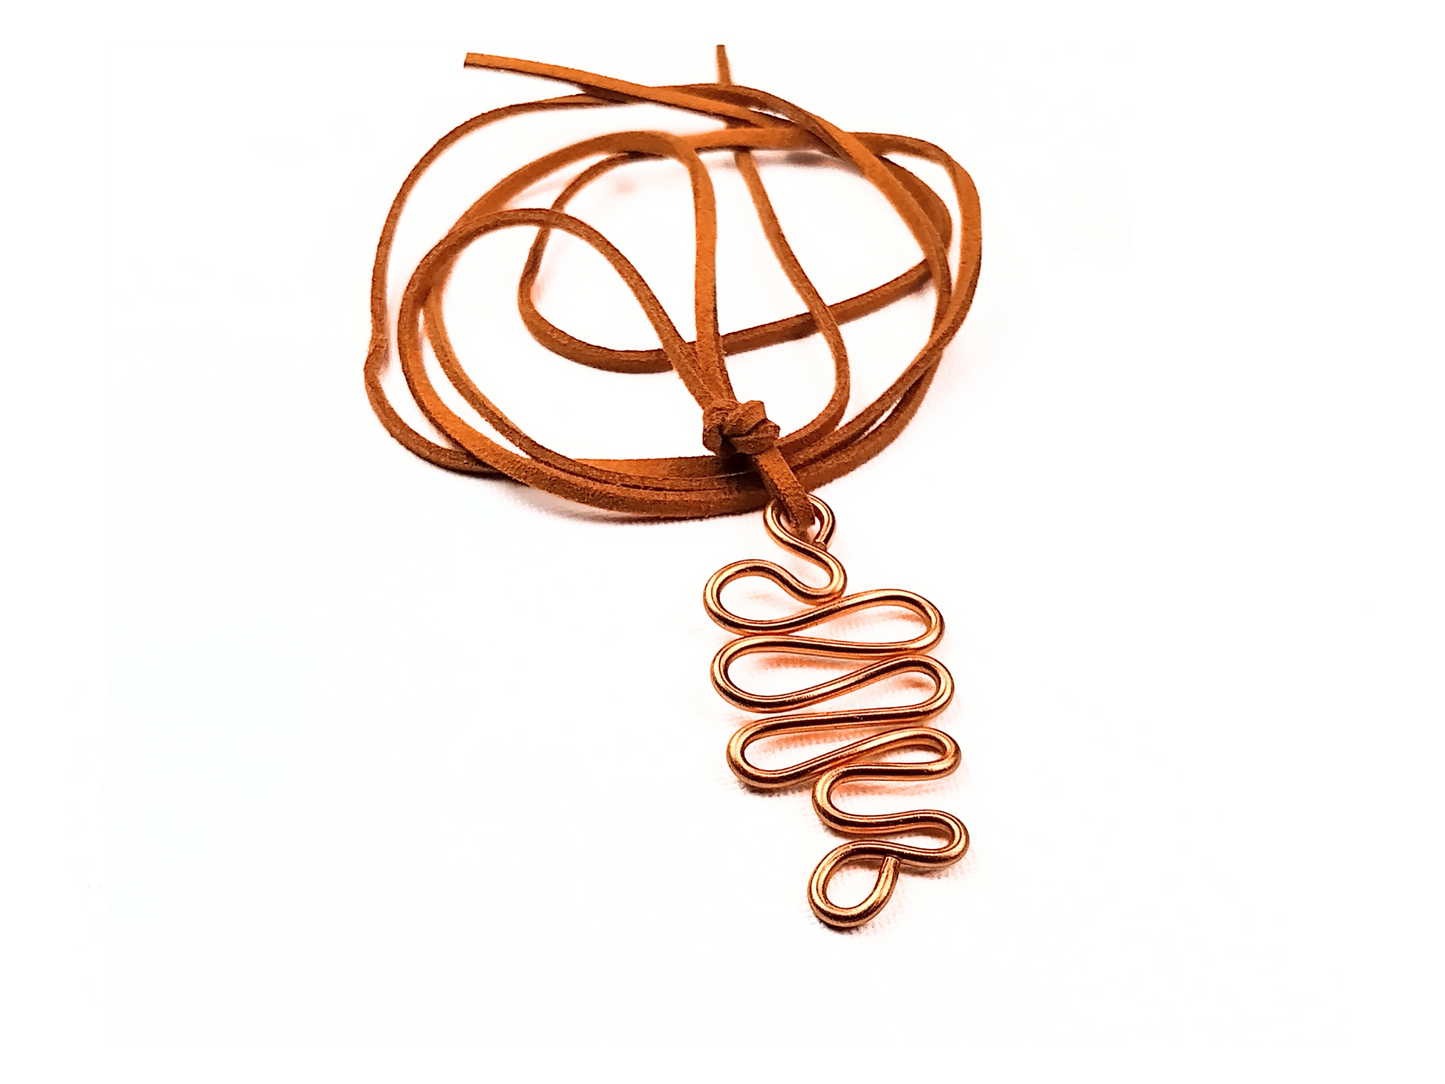 UNISEX Copper Curvy Wire Necklace (DESIGNER STATEMENT PIECE)